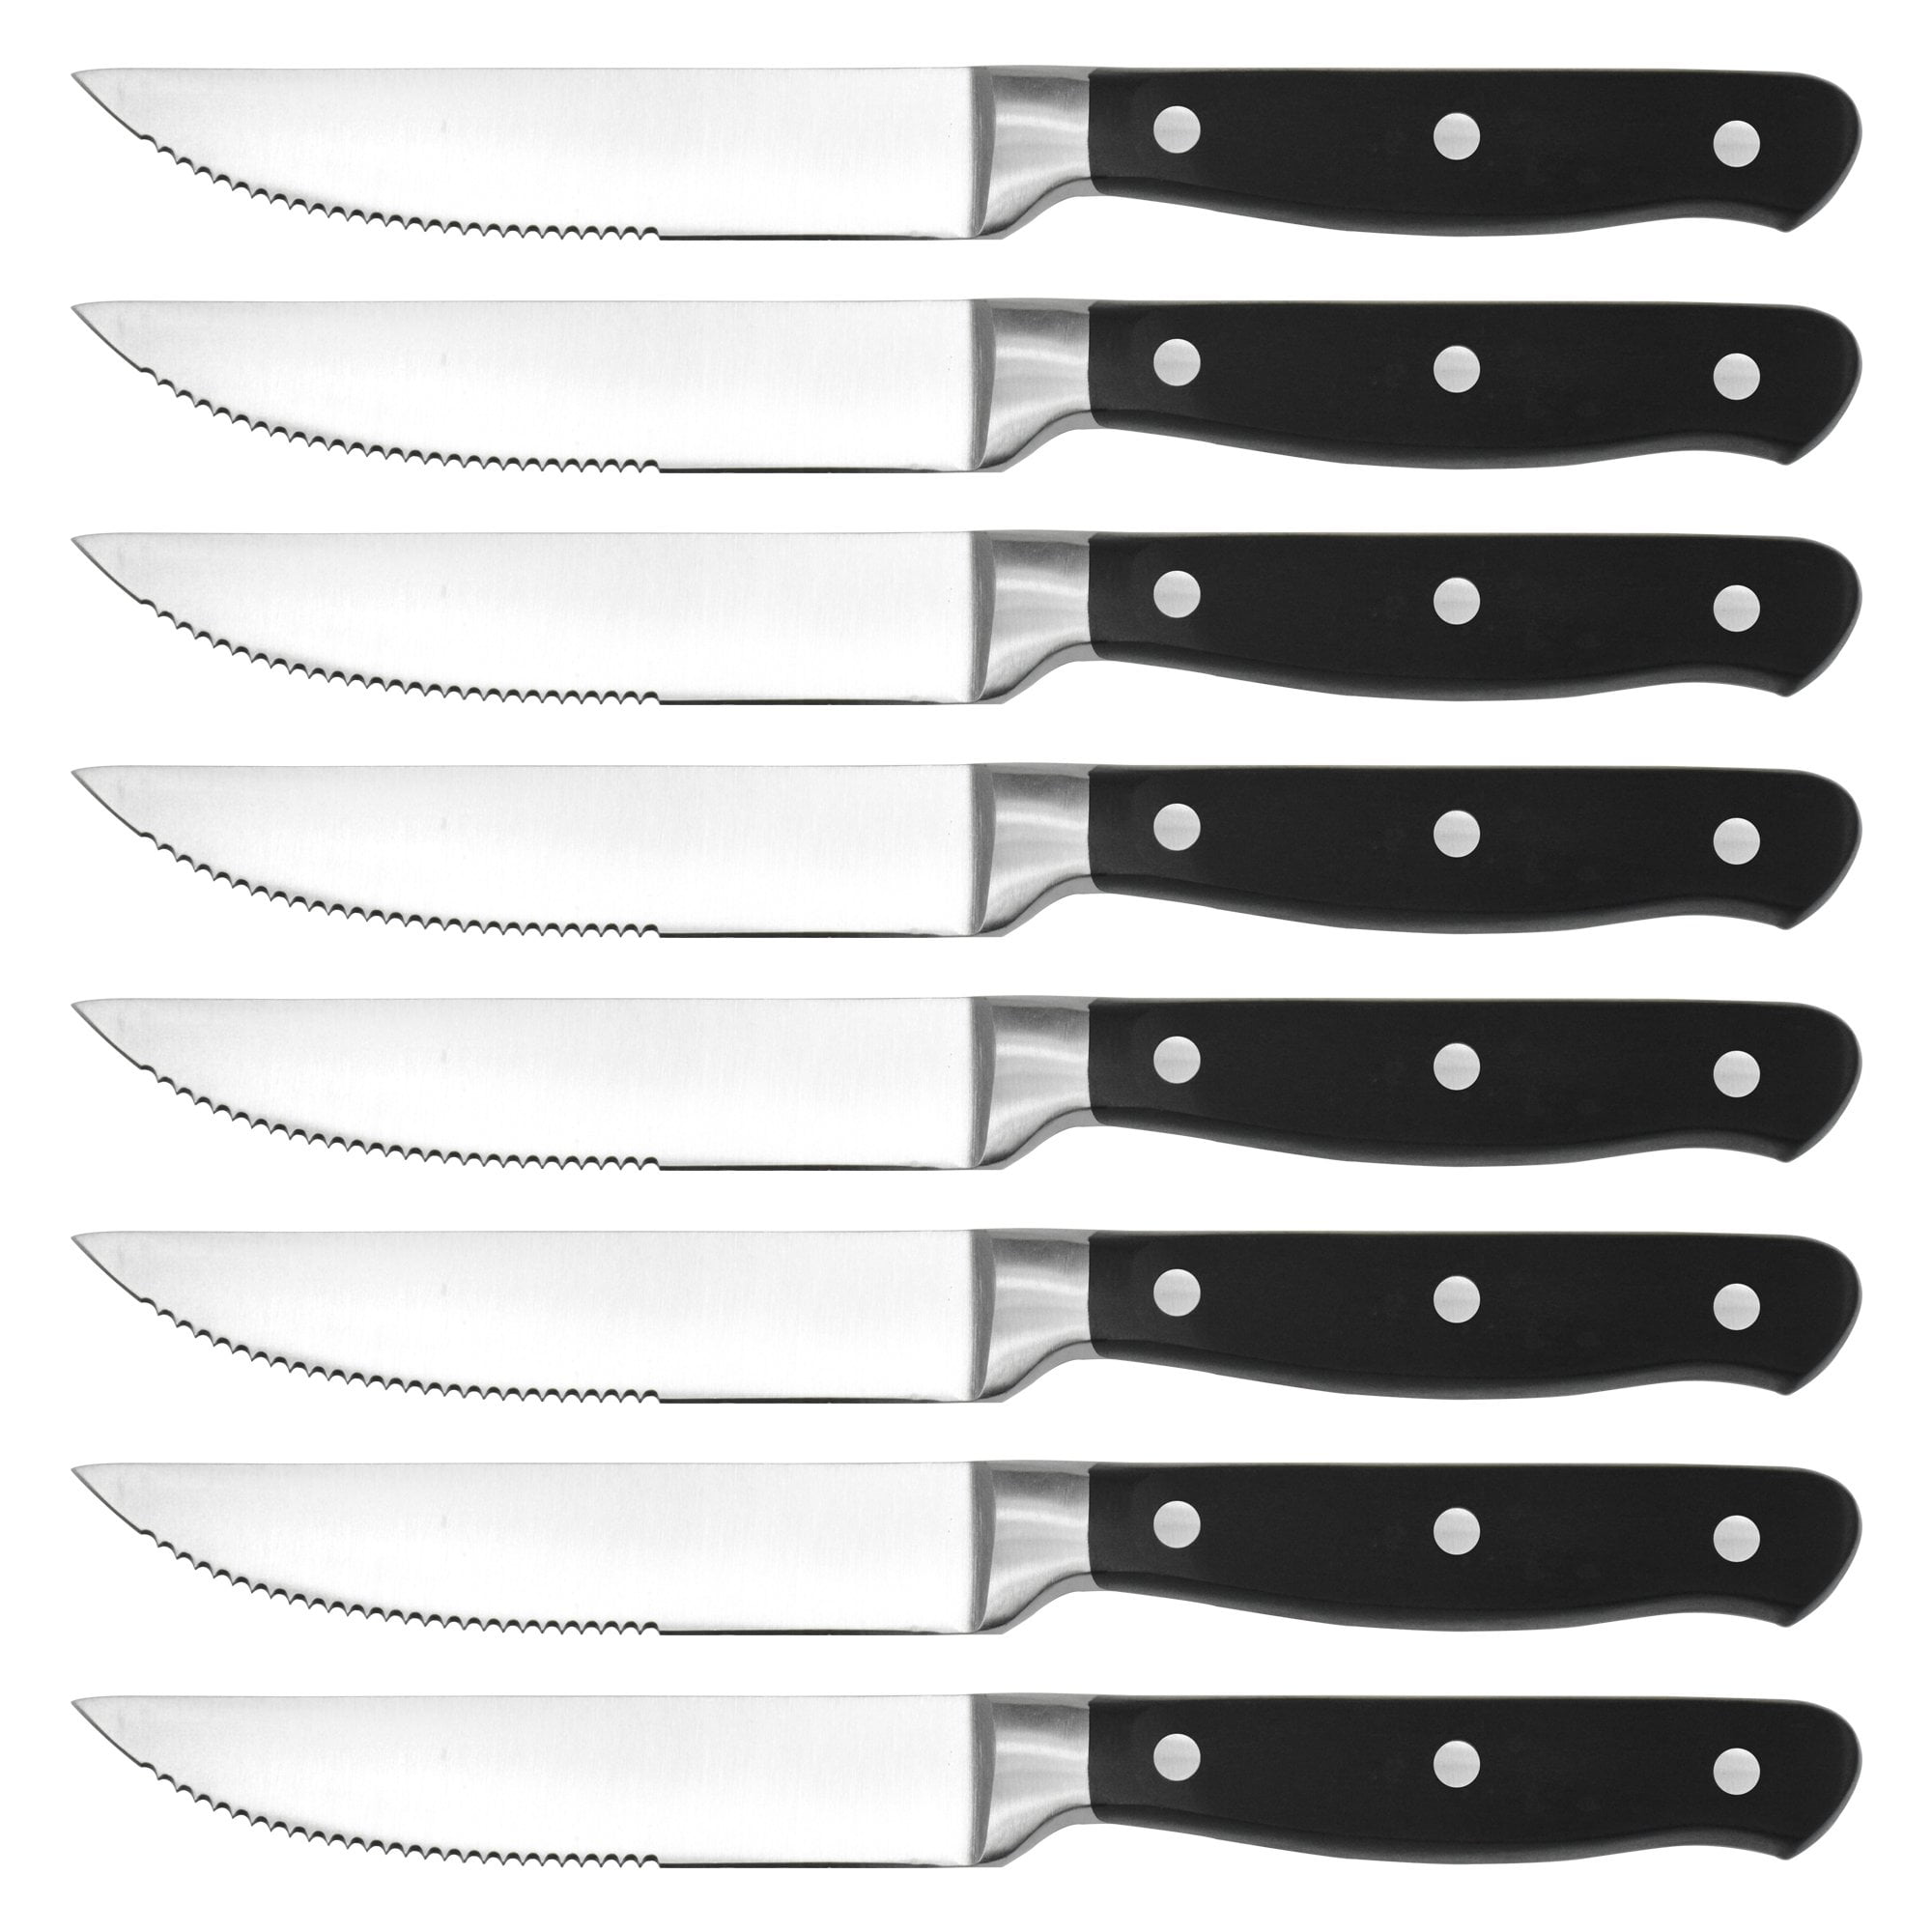 8Pcs Steak Knife Set, Service for 8, Elizabeth - Minimal